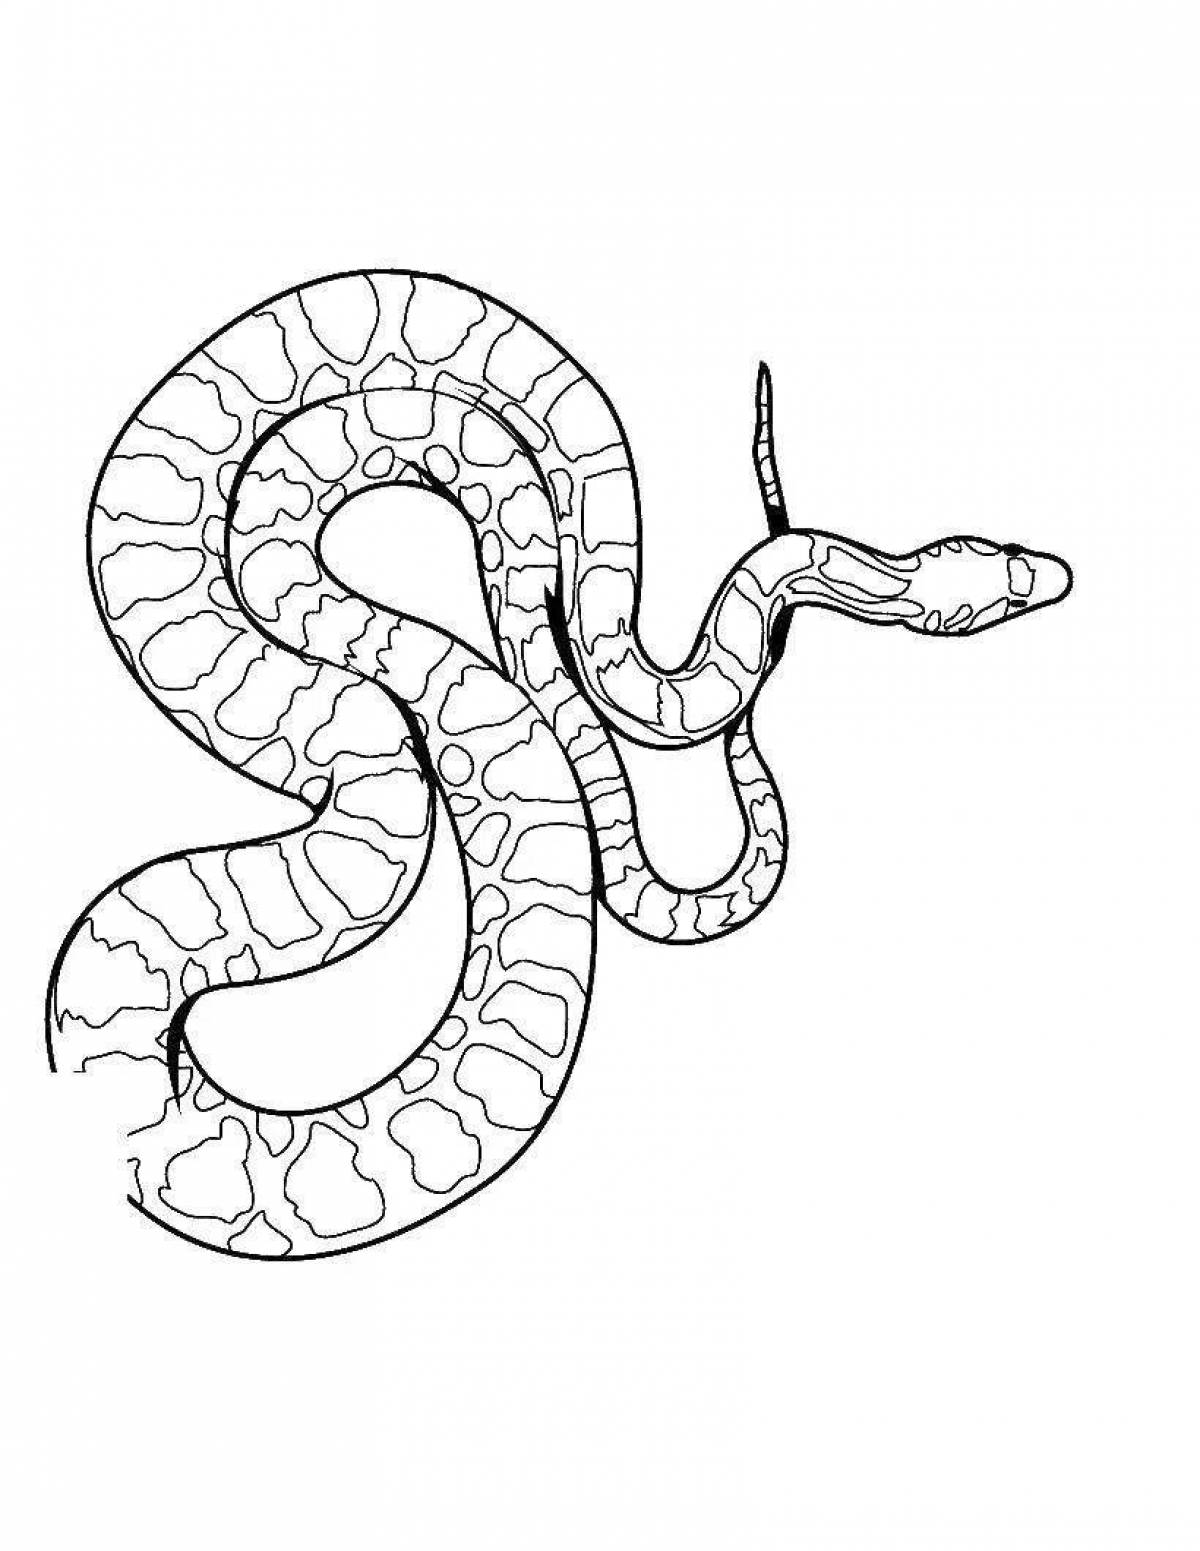 Python #7